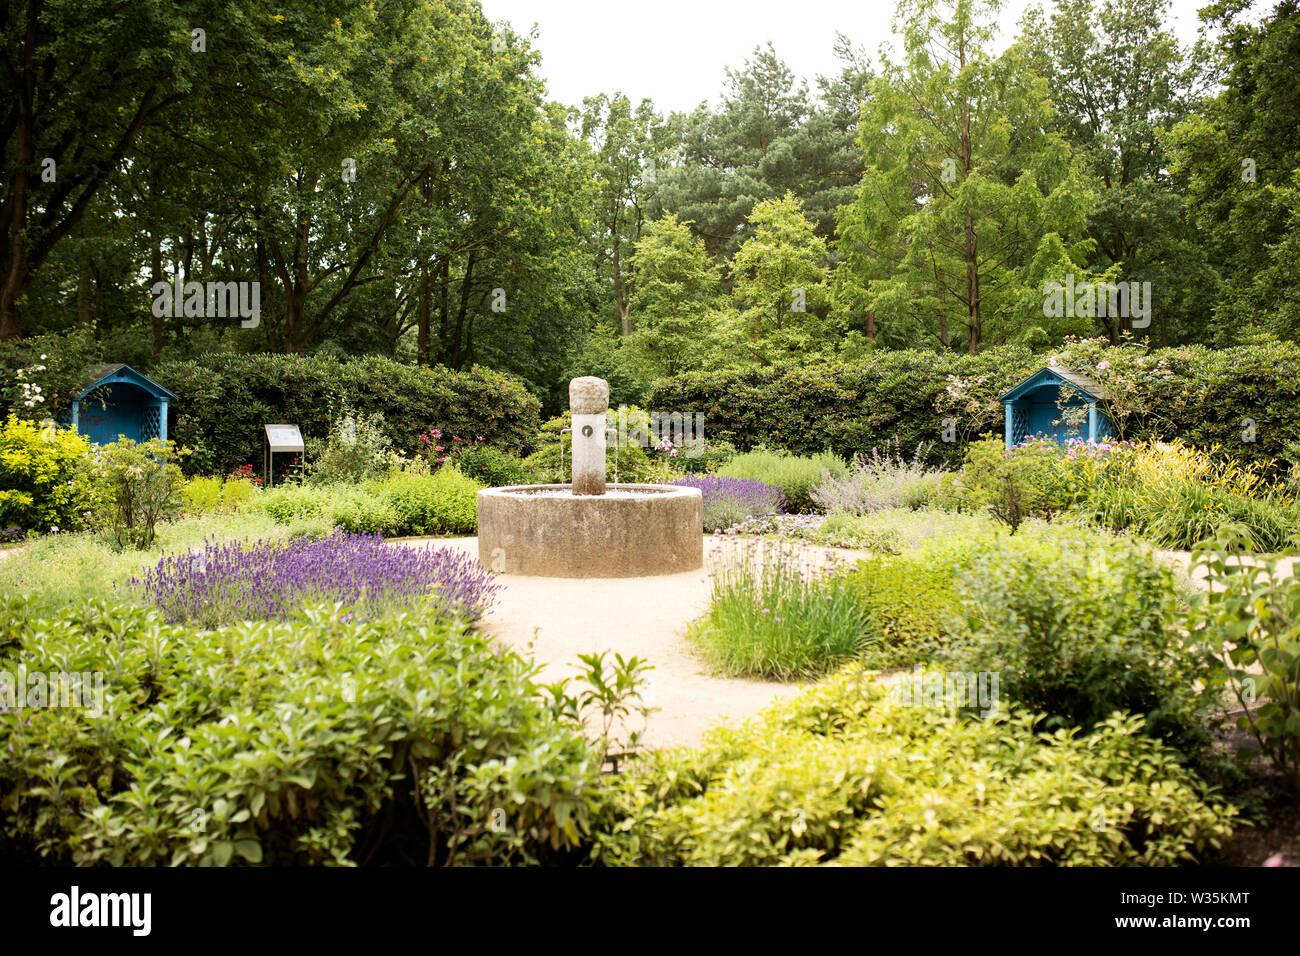 Il Duftgarten (profumo o fragranza giardino) è un giardino per i sensi presso il Parco di rododendro in Bremen, Germania. Foto Stock